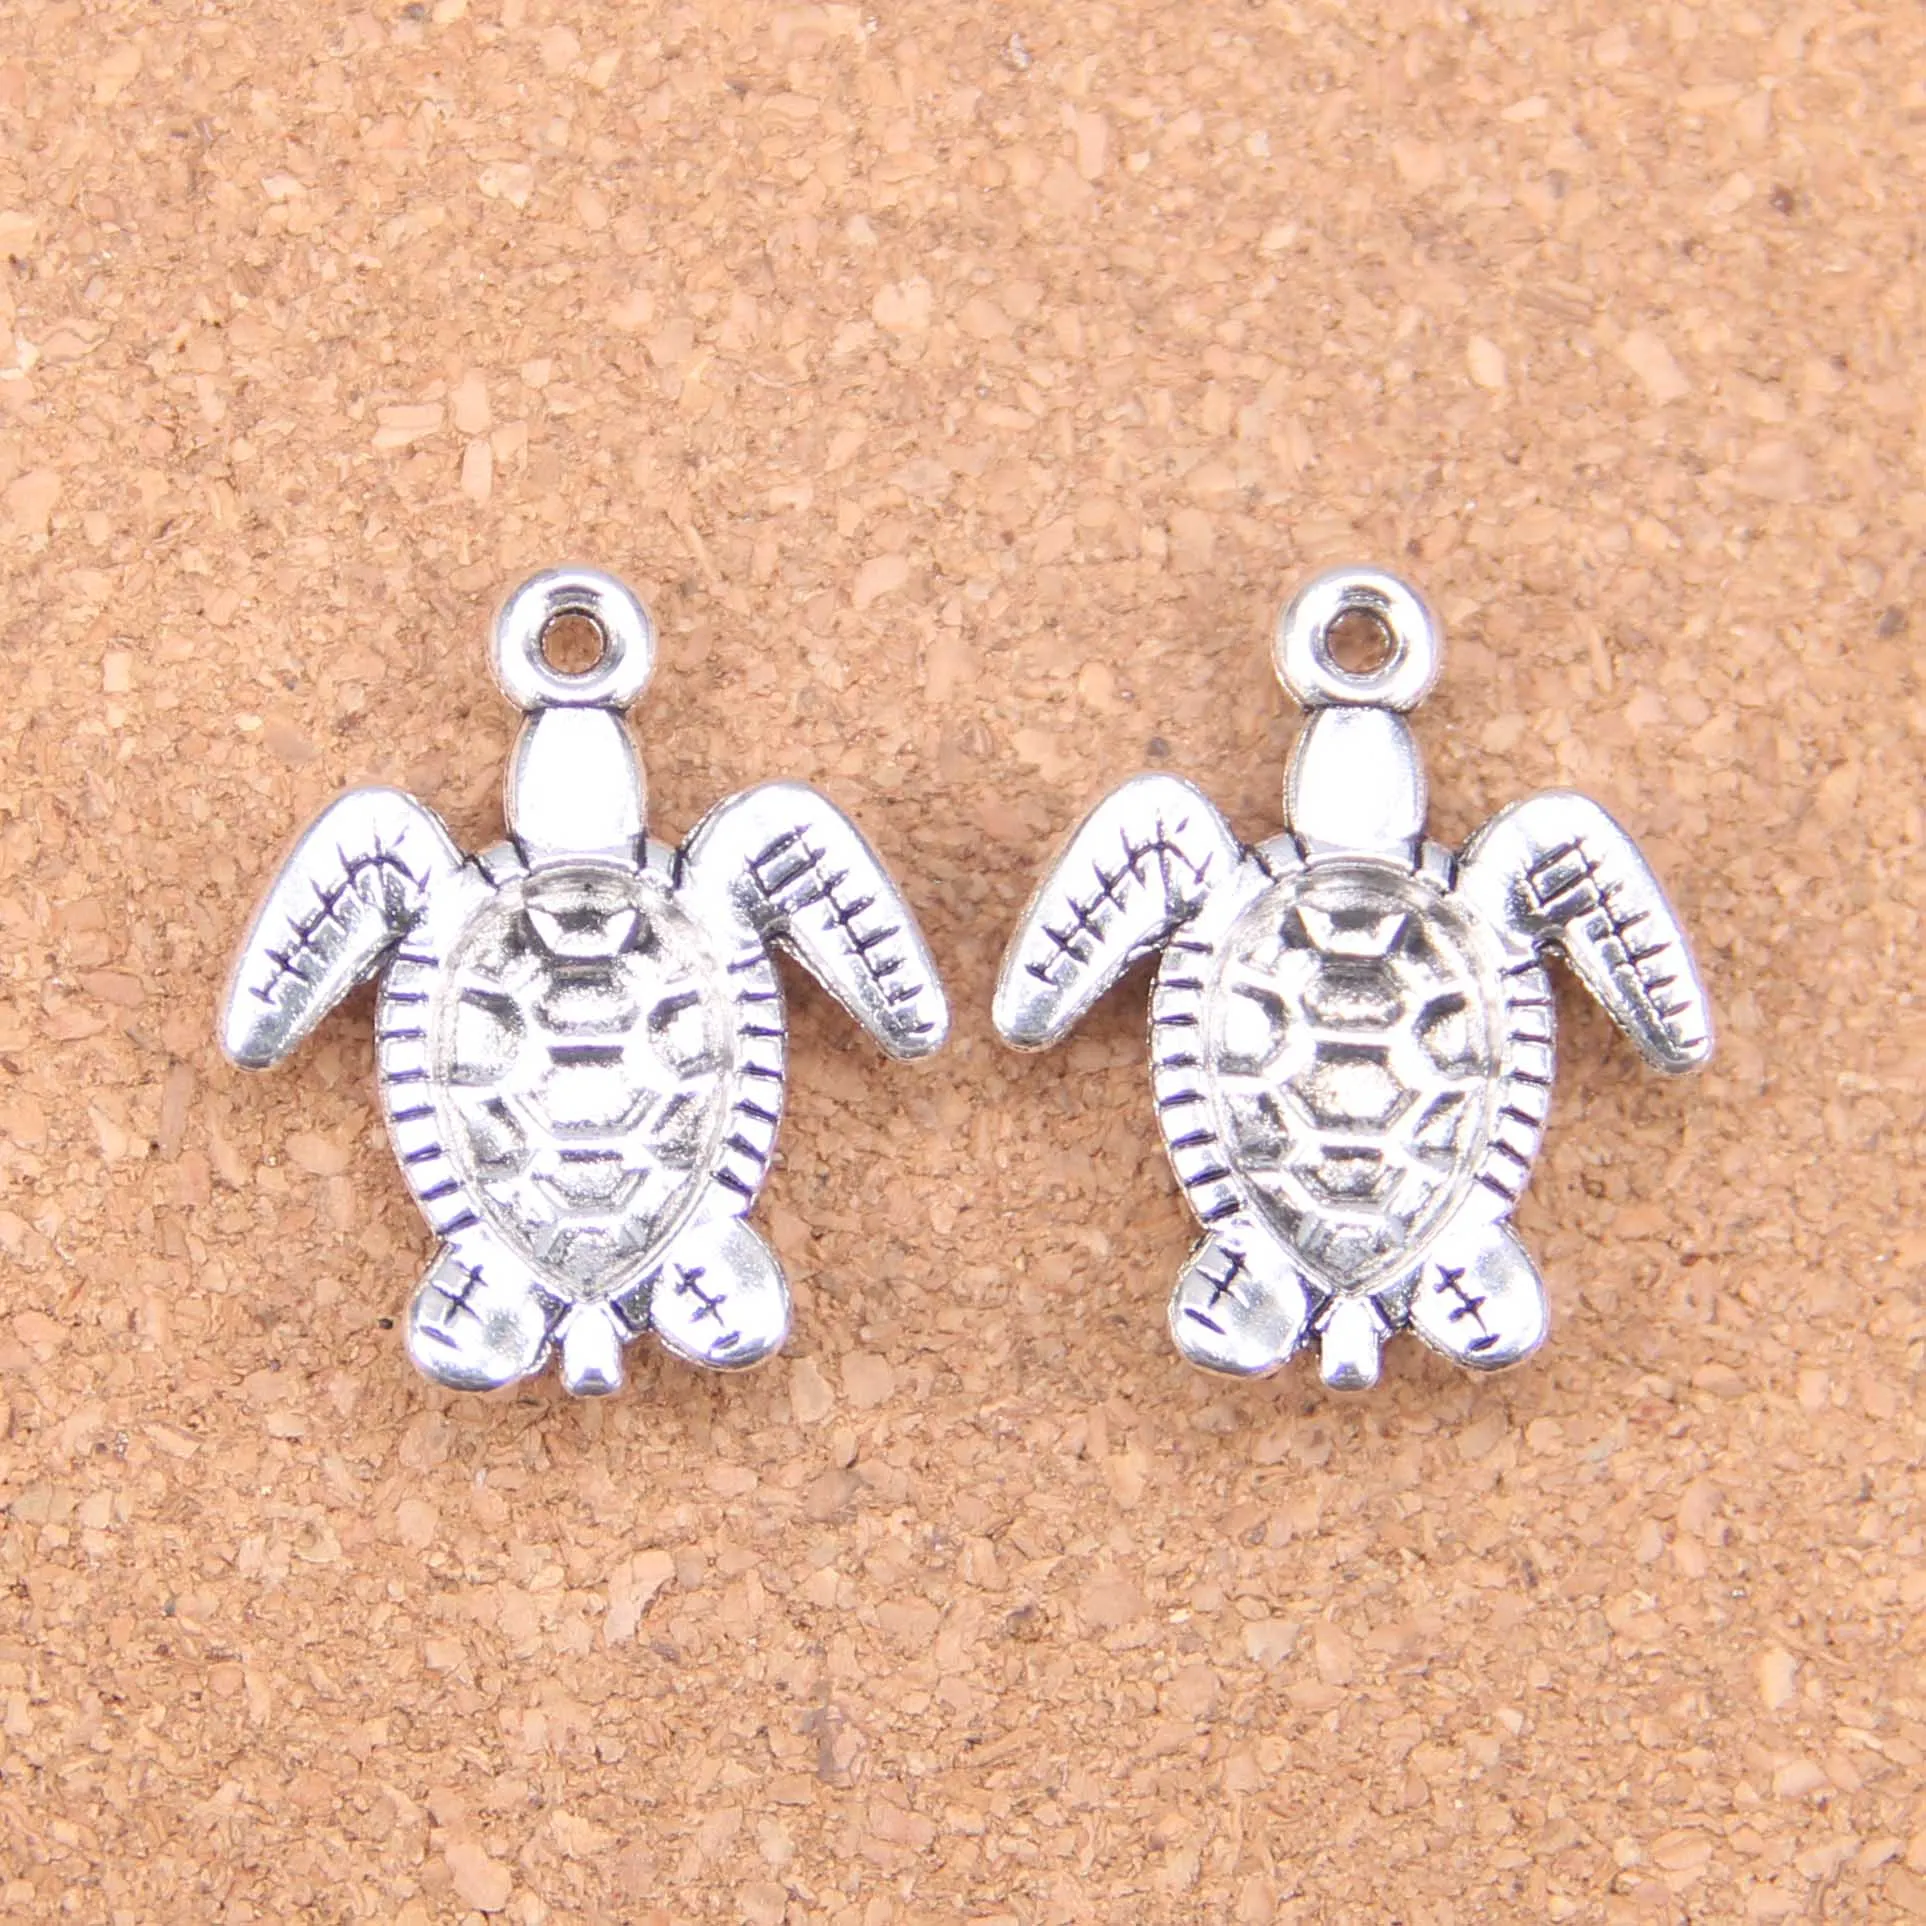 33 pezzi argento antico placcato bronzo tartaruga tartaruga marina ciondolo charms collana fai da te braccialetto braccialetto risultati 26 23mm2490